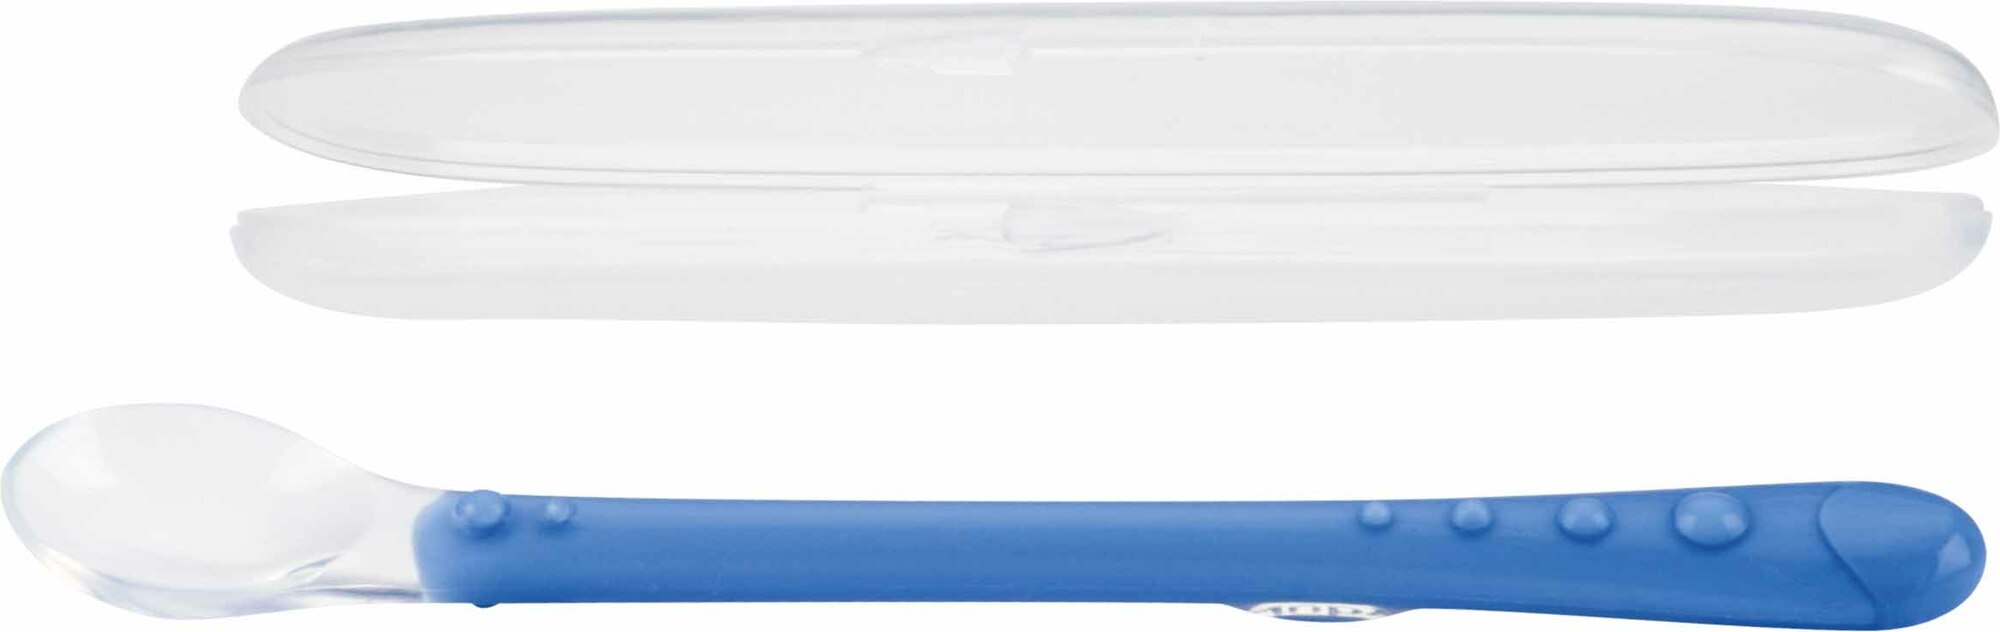 NUBY Lžička silikon s dlouhou rukojetí as obalem 1 ks, 6 m+, modrá